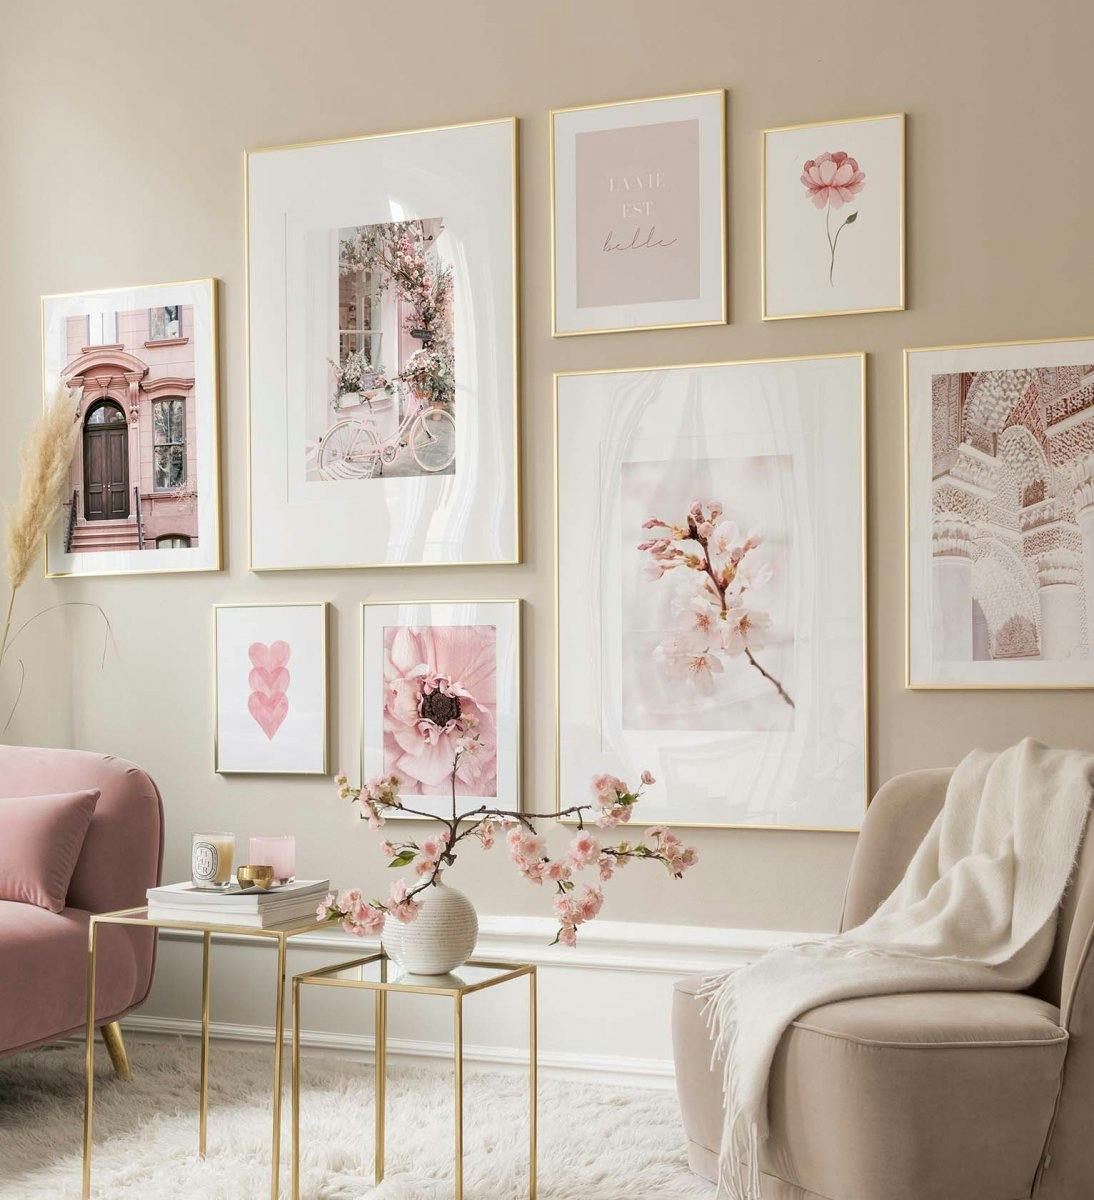 Vaaleanpunainen tauluseinä jossa on valokuvajulisteita olohuoneeseen tai makuuhuoneeseen.